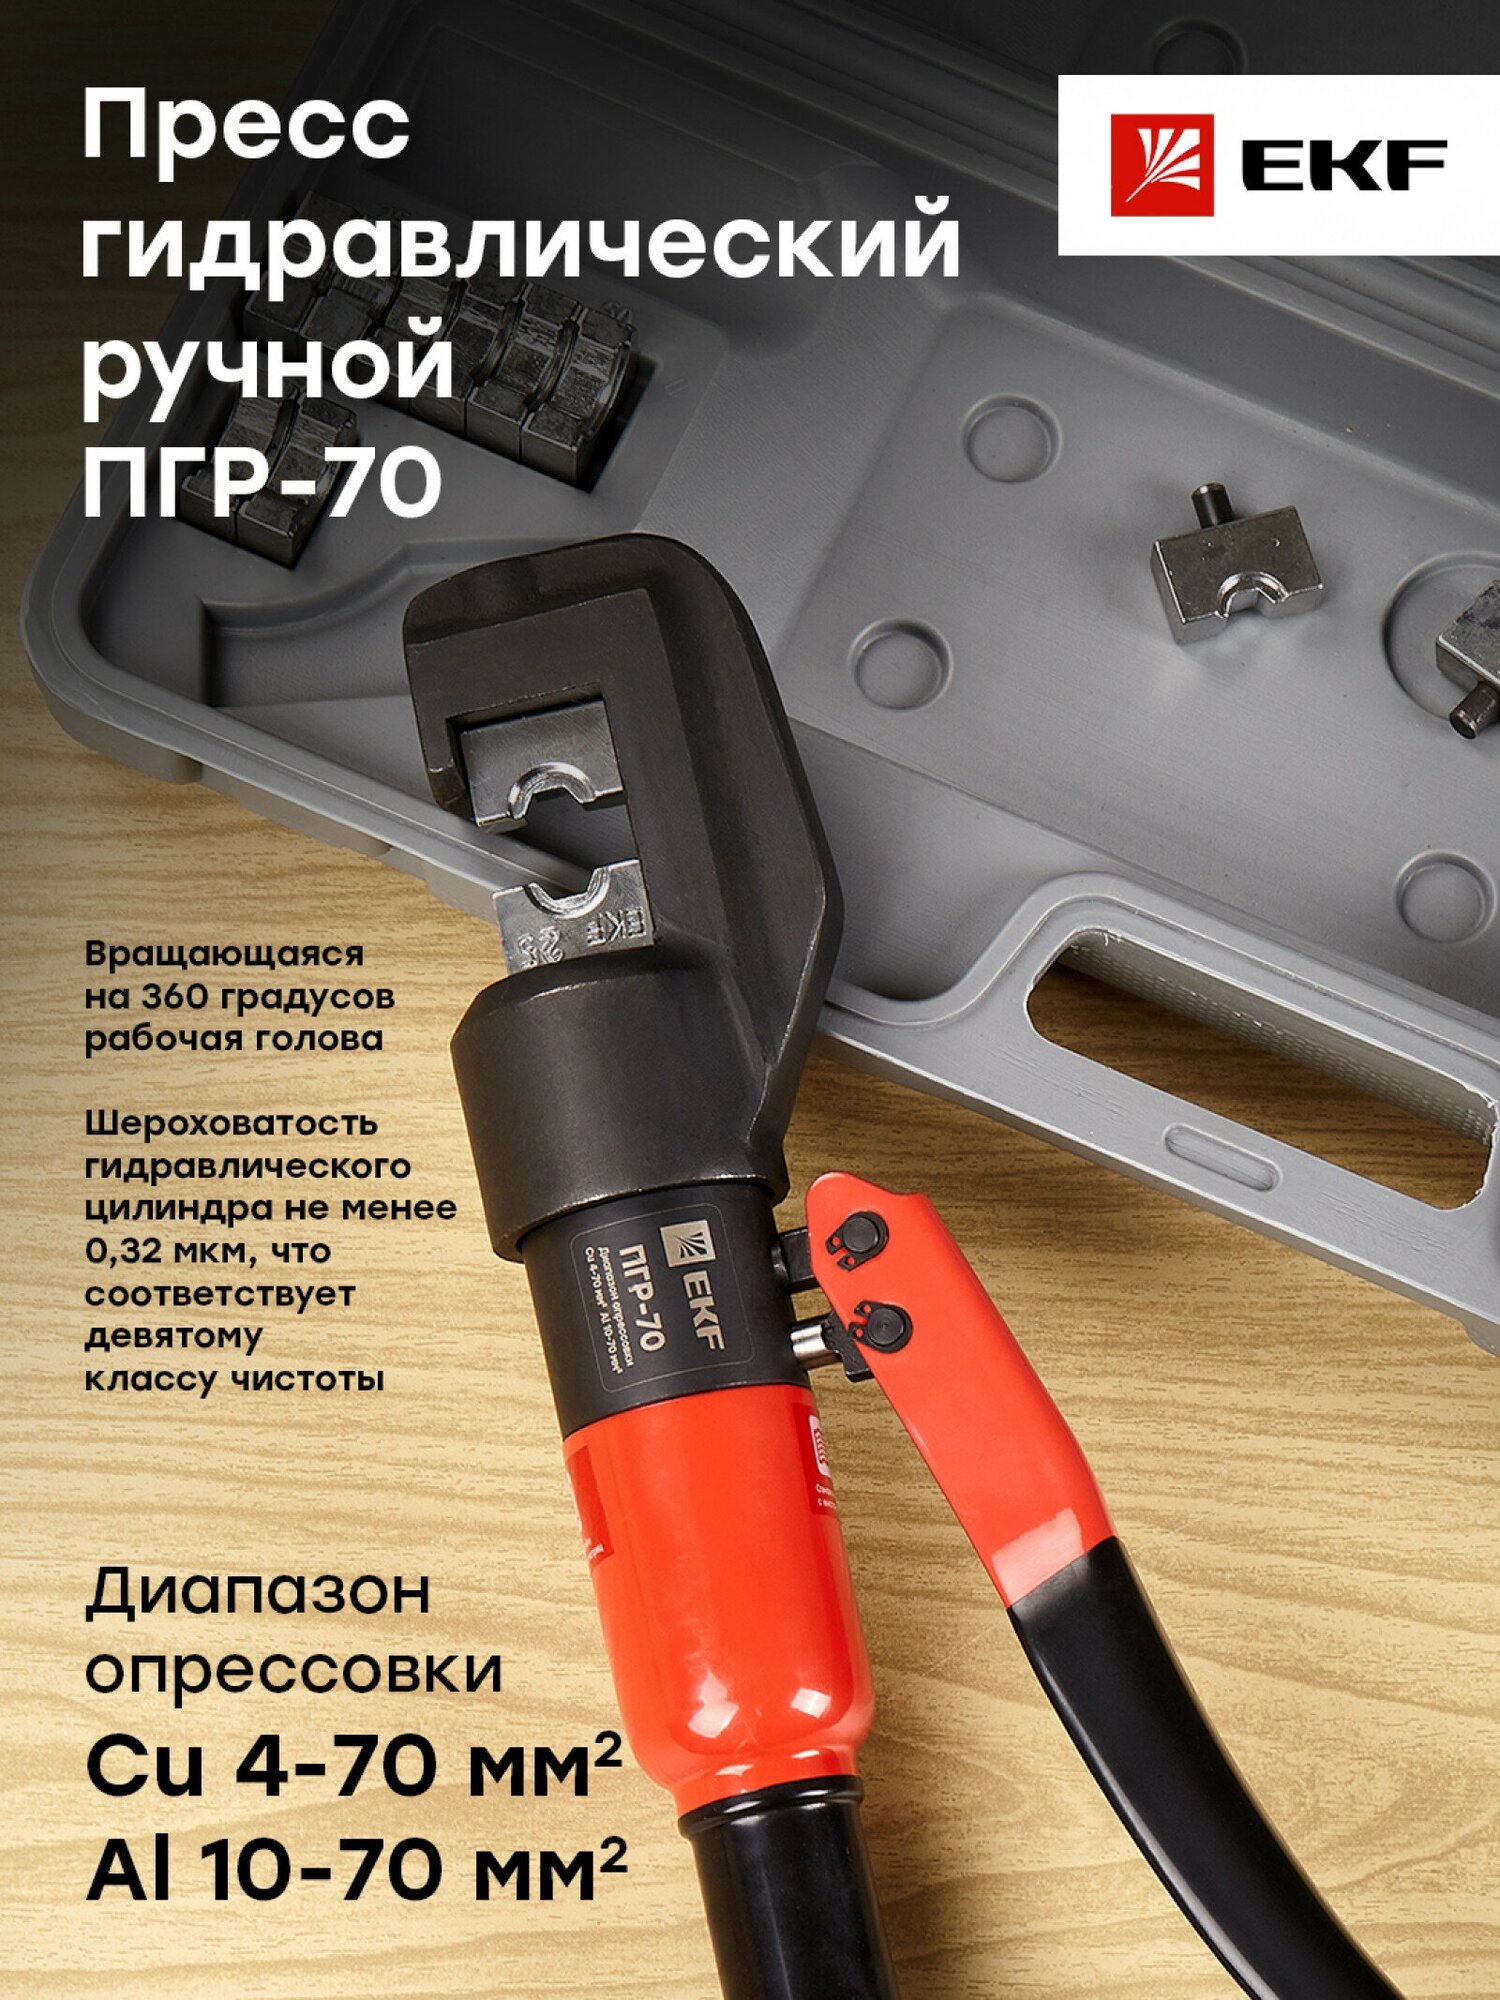 Пресс гидравлический ручной ПГР-70 EKF Master